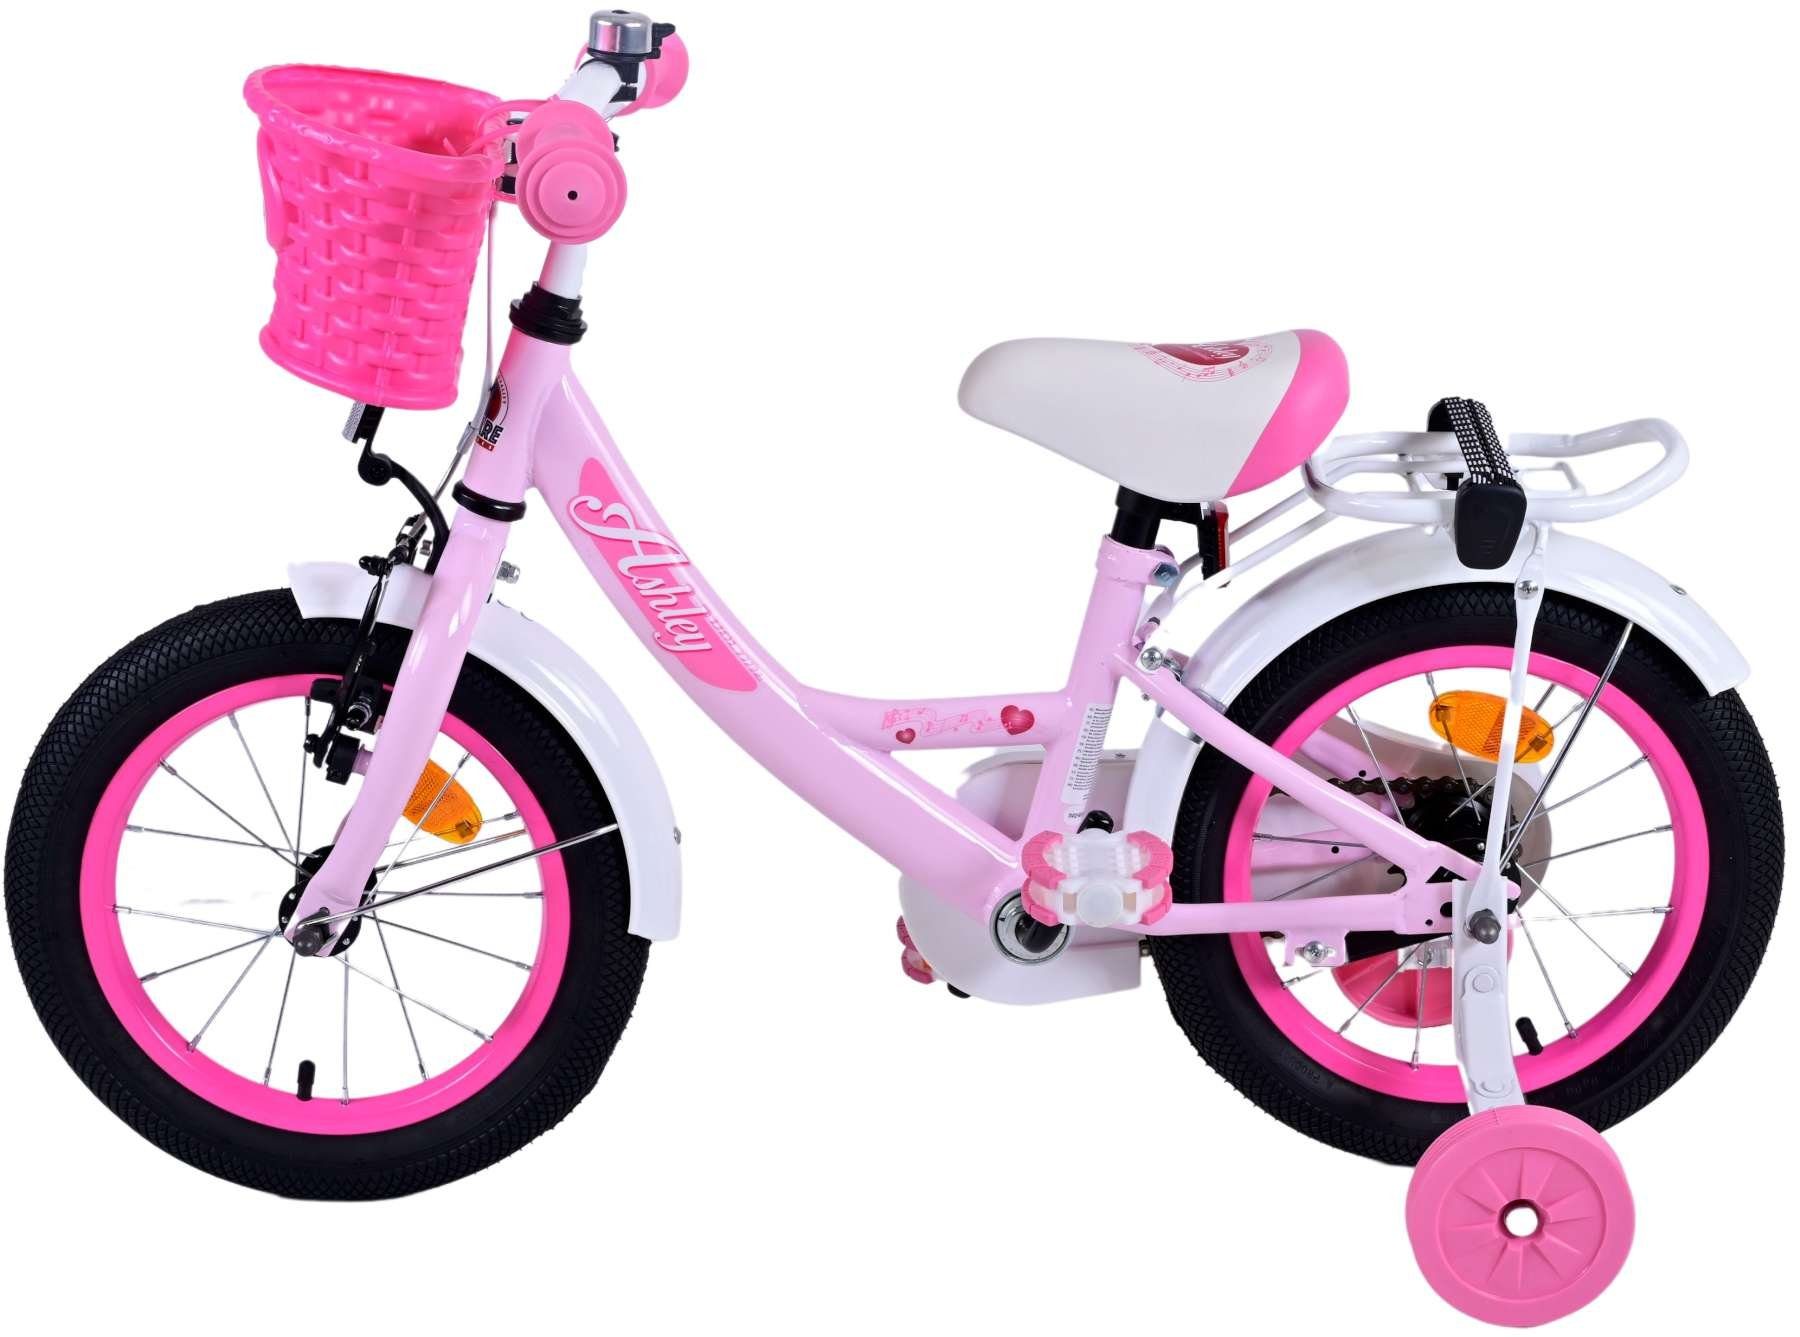 Volare Kinderfahrrad Ashley mit Rücktrittbremse in verschiedenen Größen und Farben, bis 60 kg, 85% zusammengebaut, Luftbereifung, einstellbare Lenkerhöhe rosa